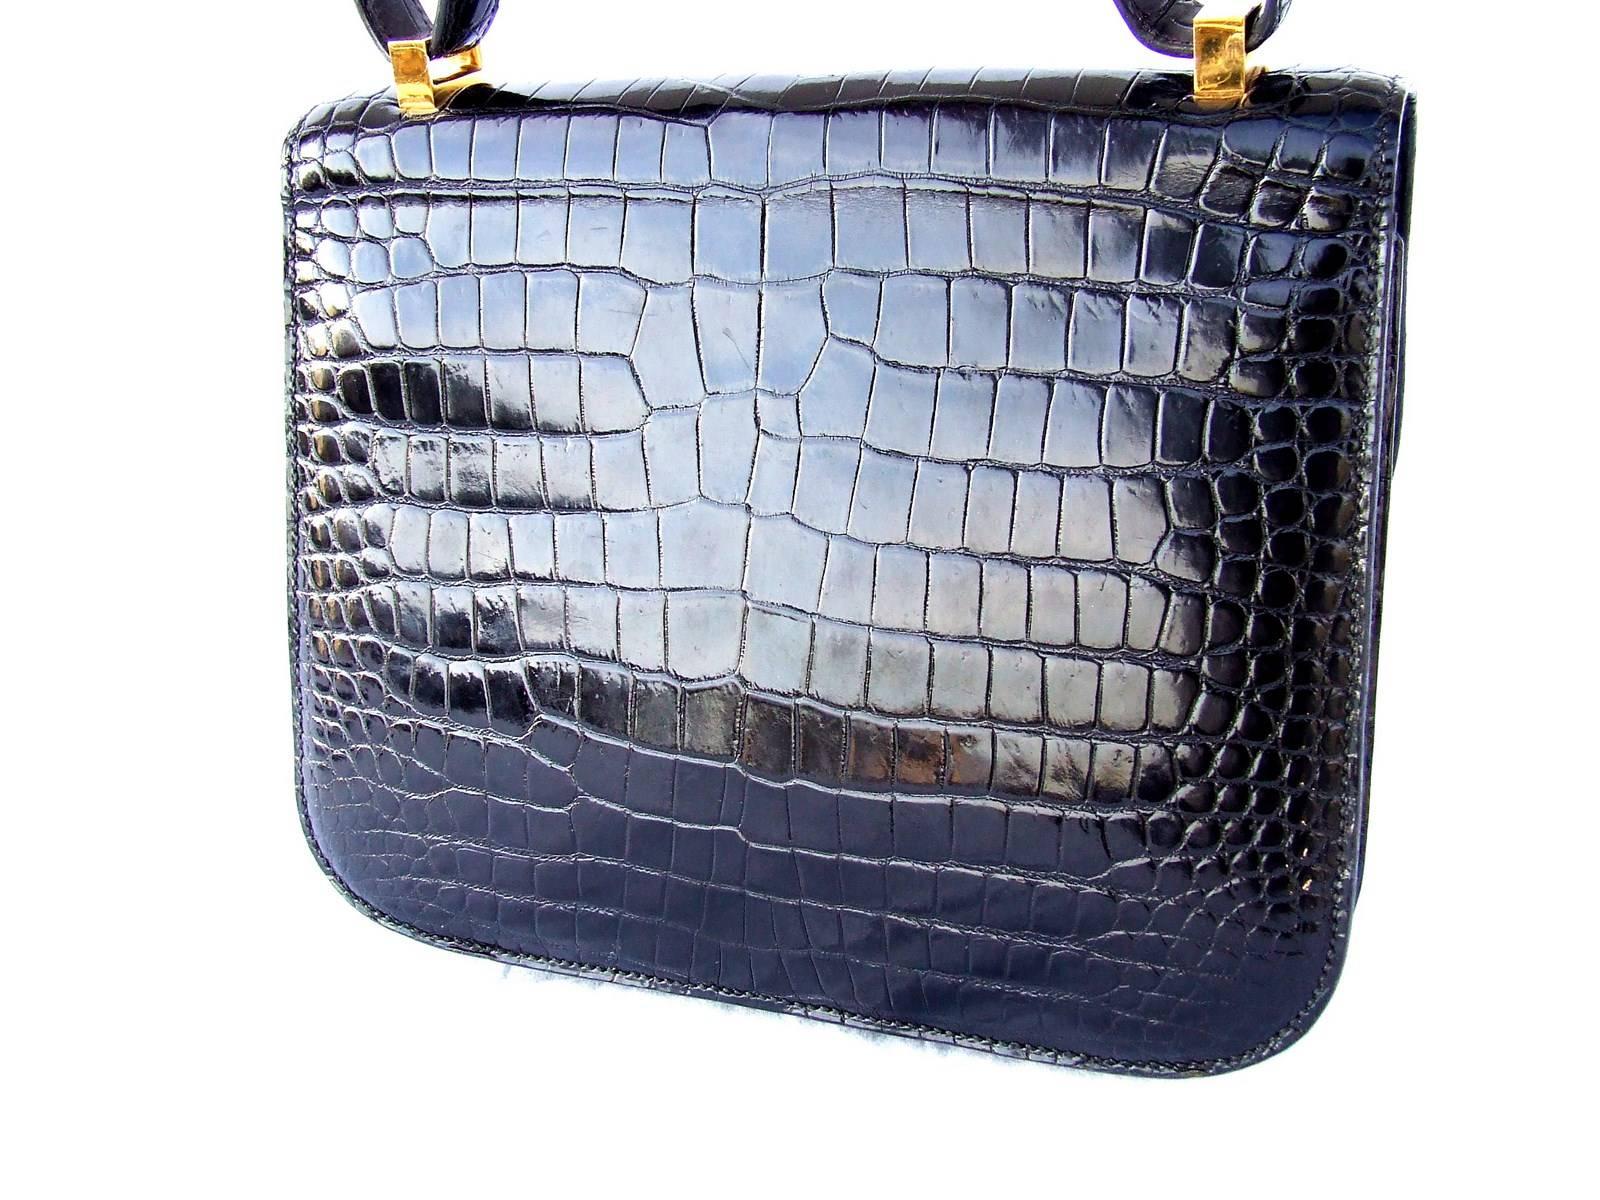 Women's Hermes Constance H Flap Bag Black Shiny Crocodile Gold HDW 23 cm